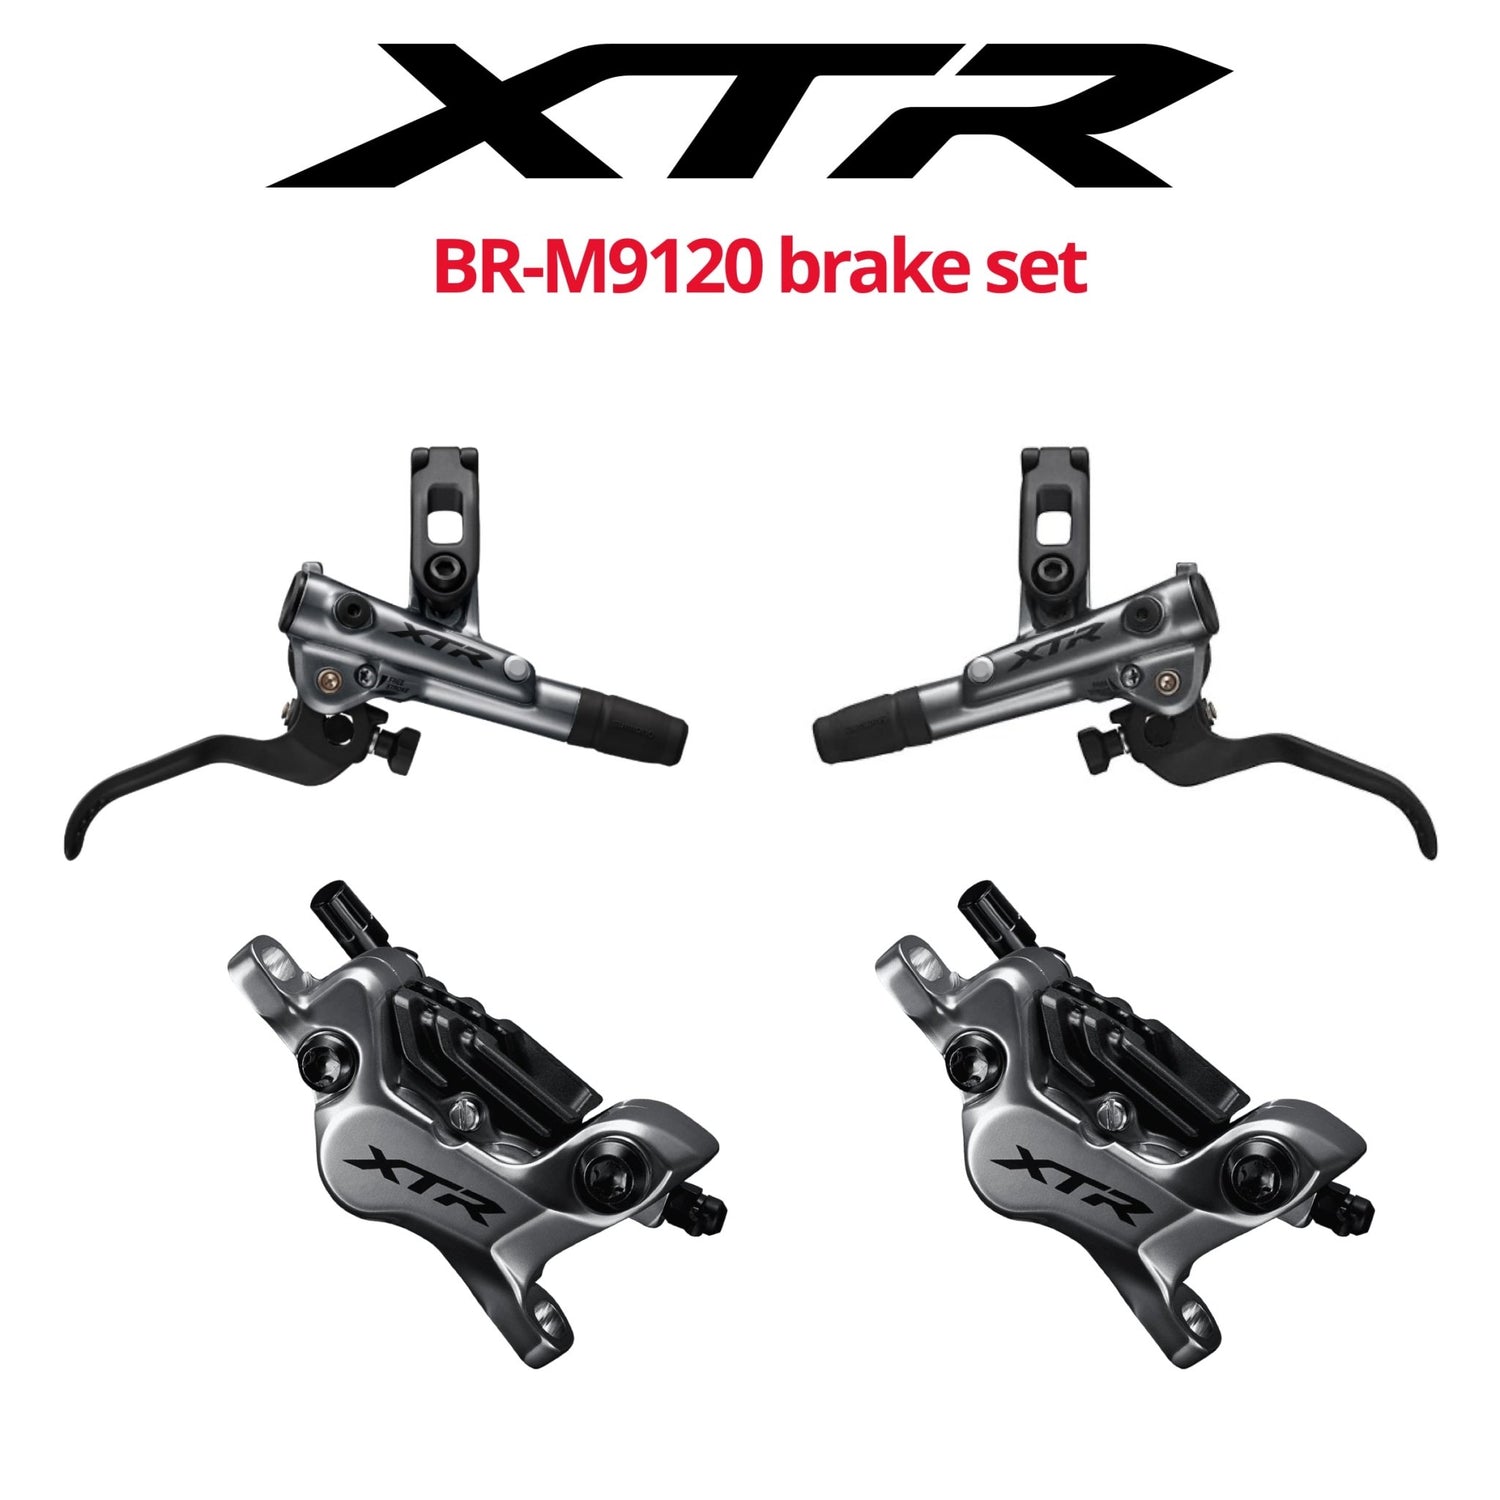 Shimano XTR BR-M9120 4-Piston Disc Brake Set, front & rear